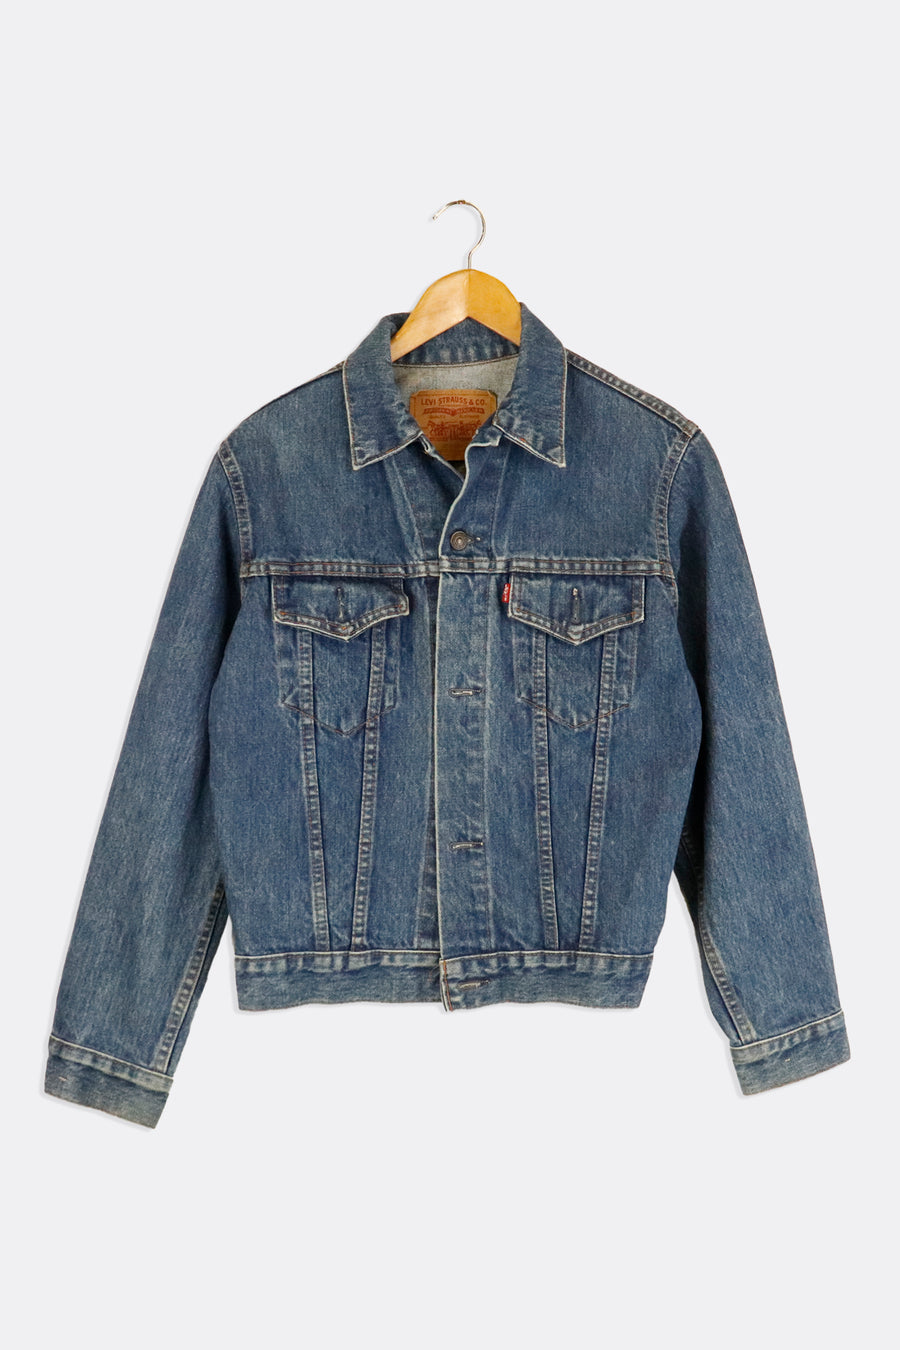 Vintage Levis Dark Denim Jacket Outerwear